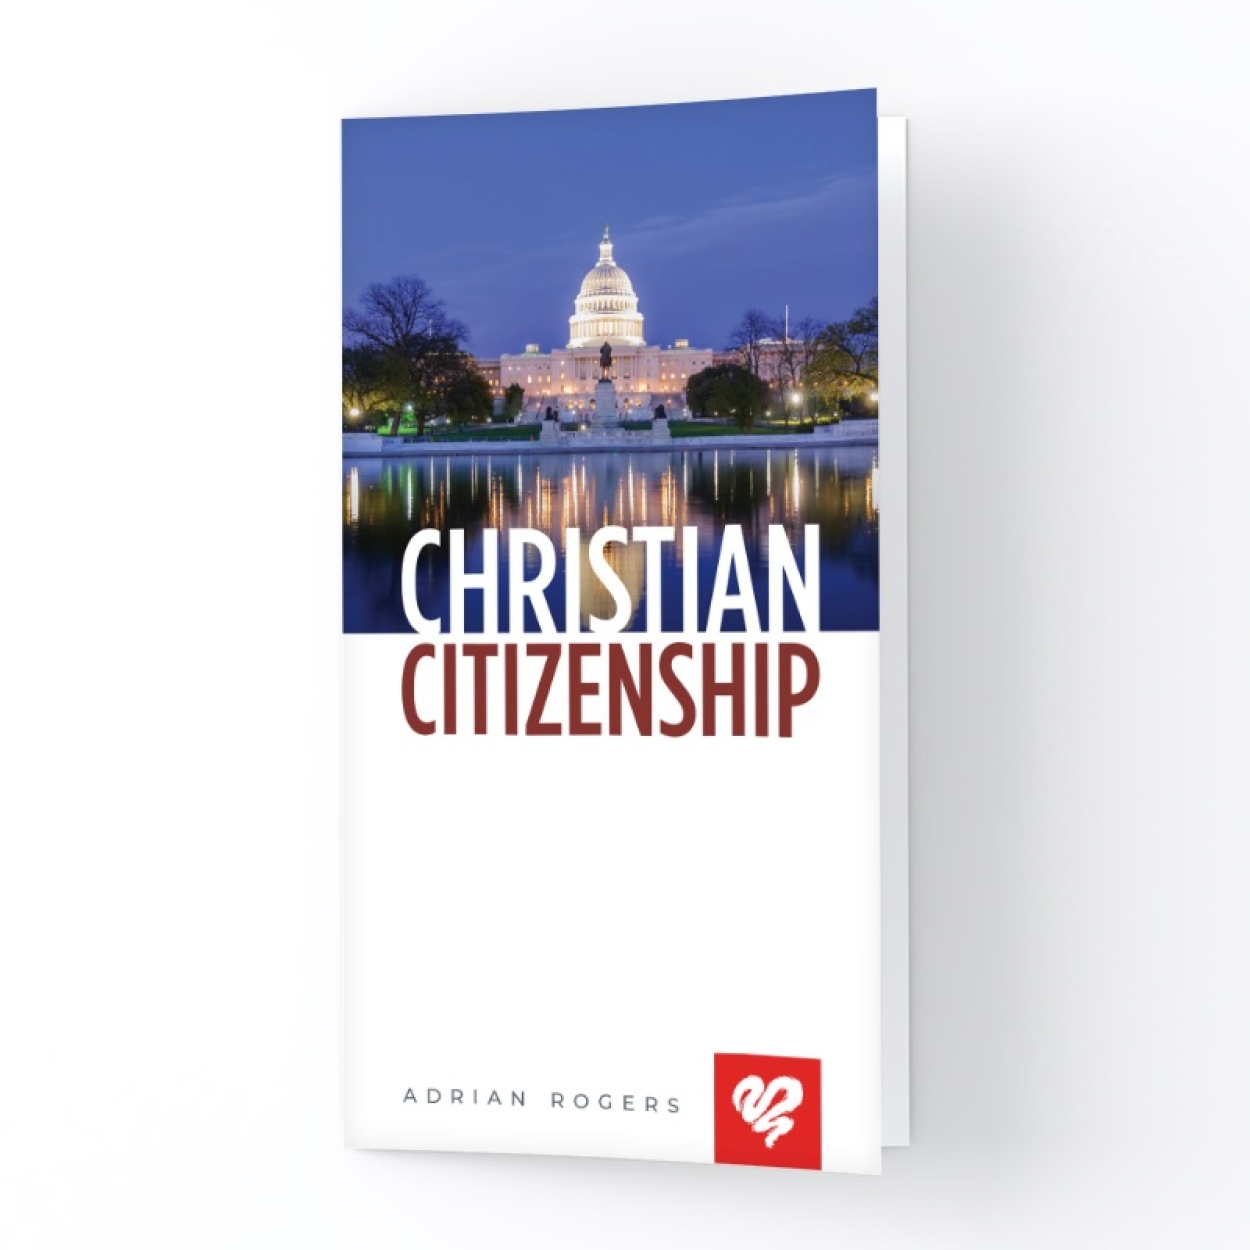 K163 Christian Citizenship Square